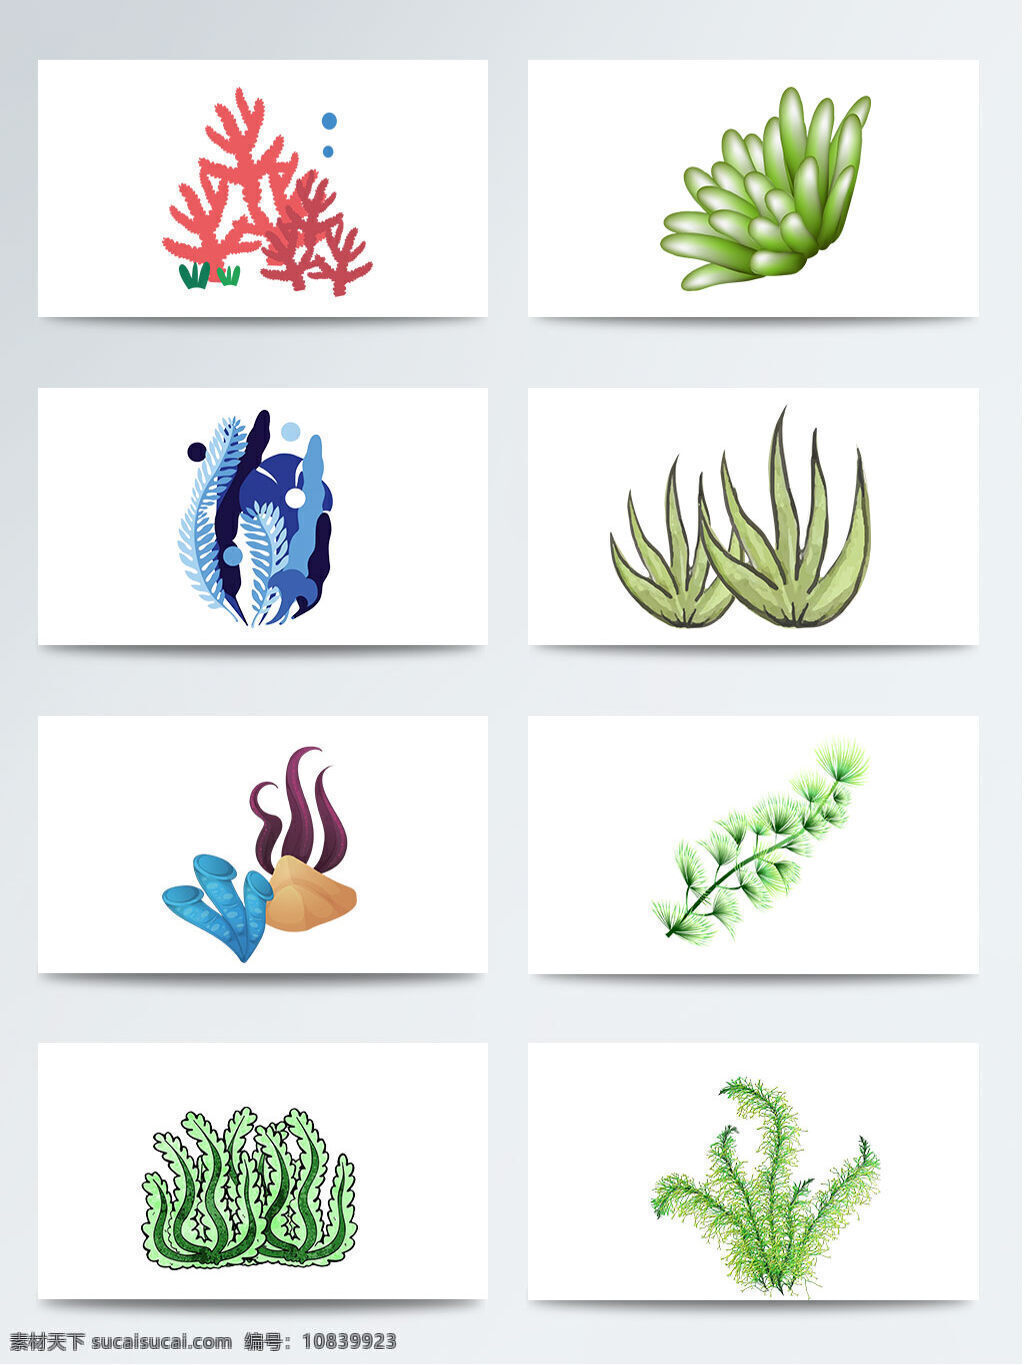 海底植物 海洋植物 礁石 卡通 绿色 梦幻水草 手绘 水彩画 水草叶子 唯美 叶子 植物 梦幻 水草 元素